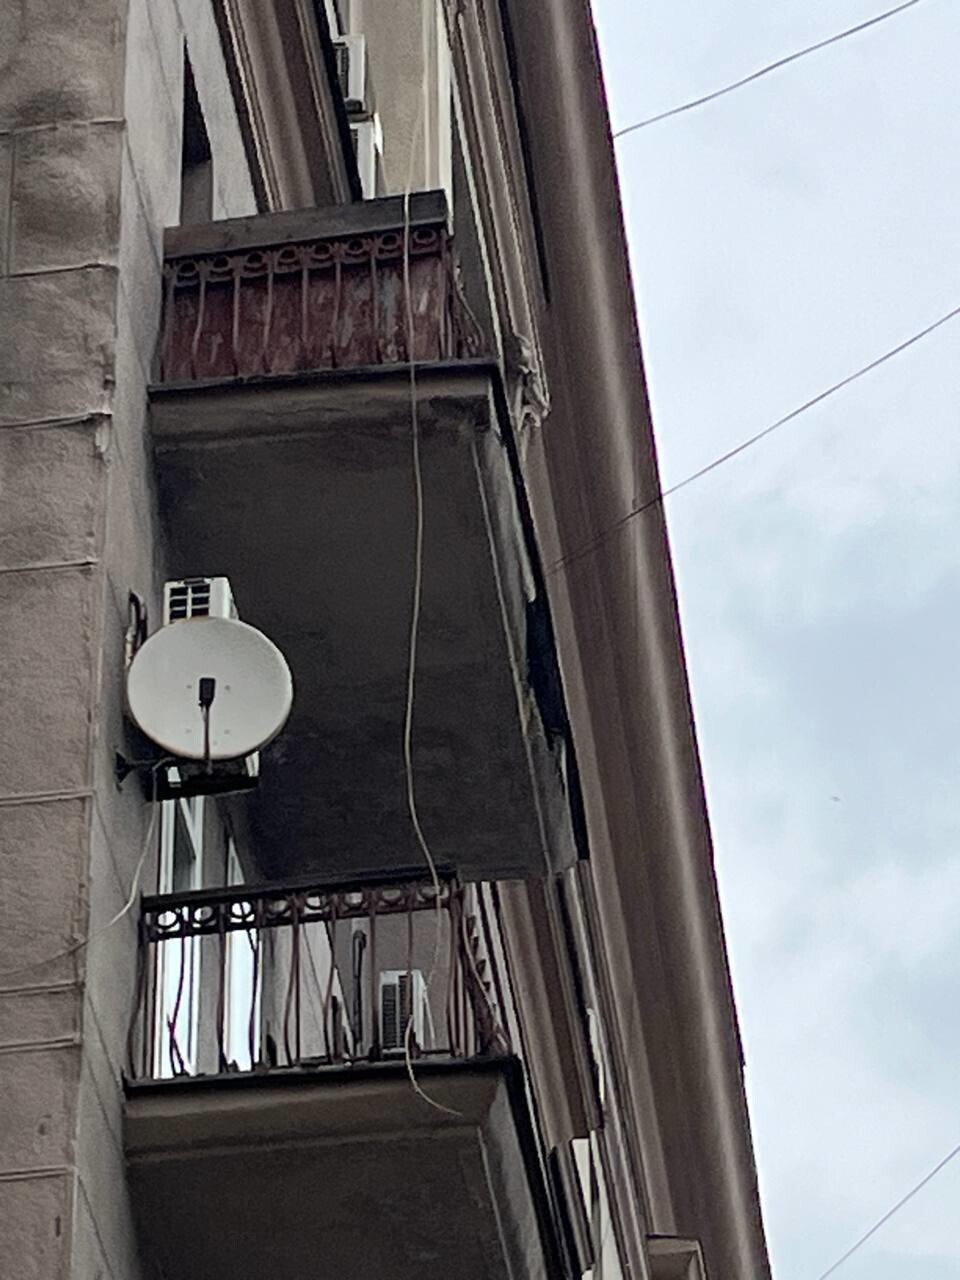 В центре Москвы на прохожих рухнула часть балкона